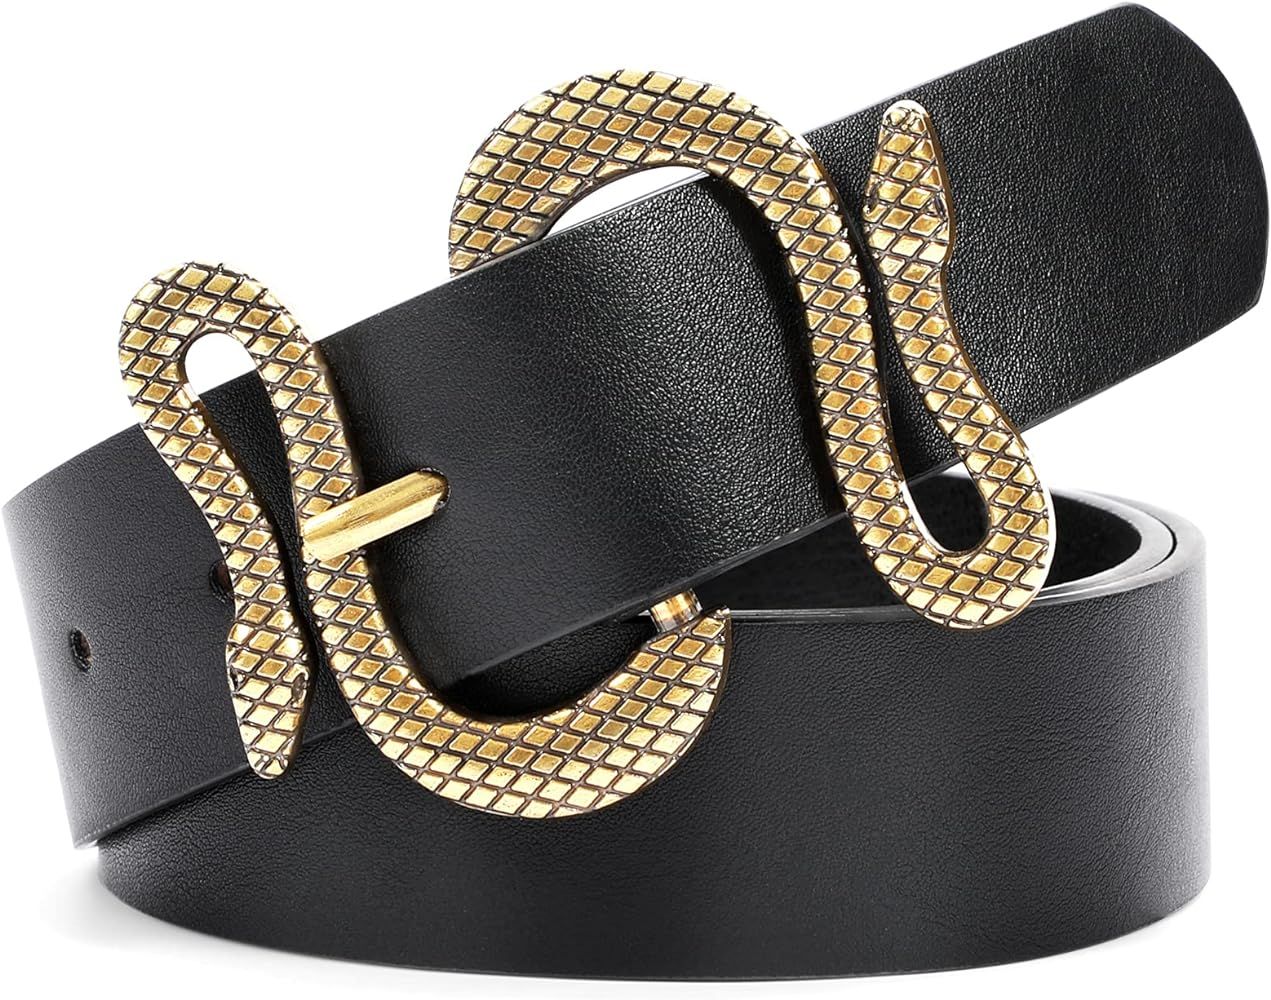 Triworks Belt For Women Fashion Leather Belt Gold/Black Snake Buckle Belt for Jeans, Pants, Dress... | Amazon (US)